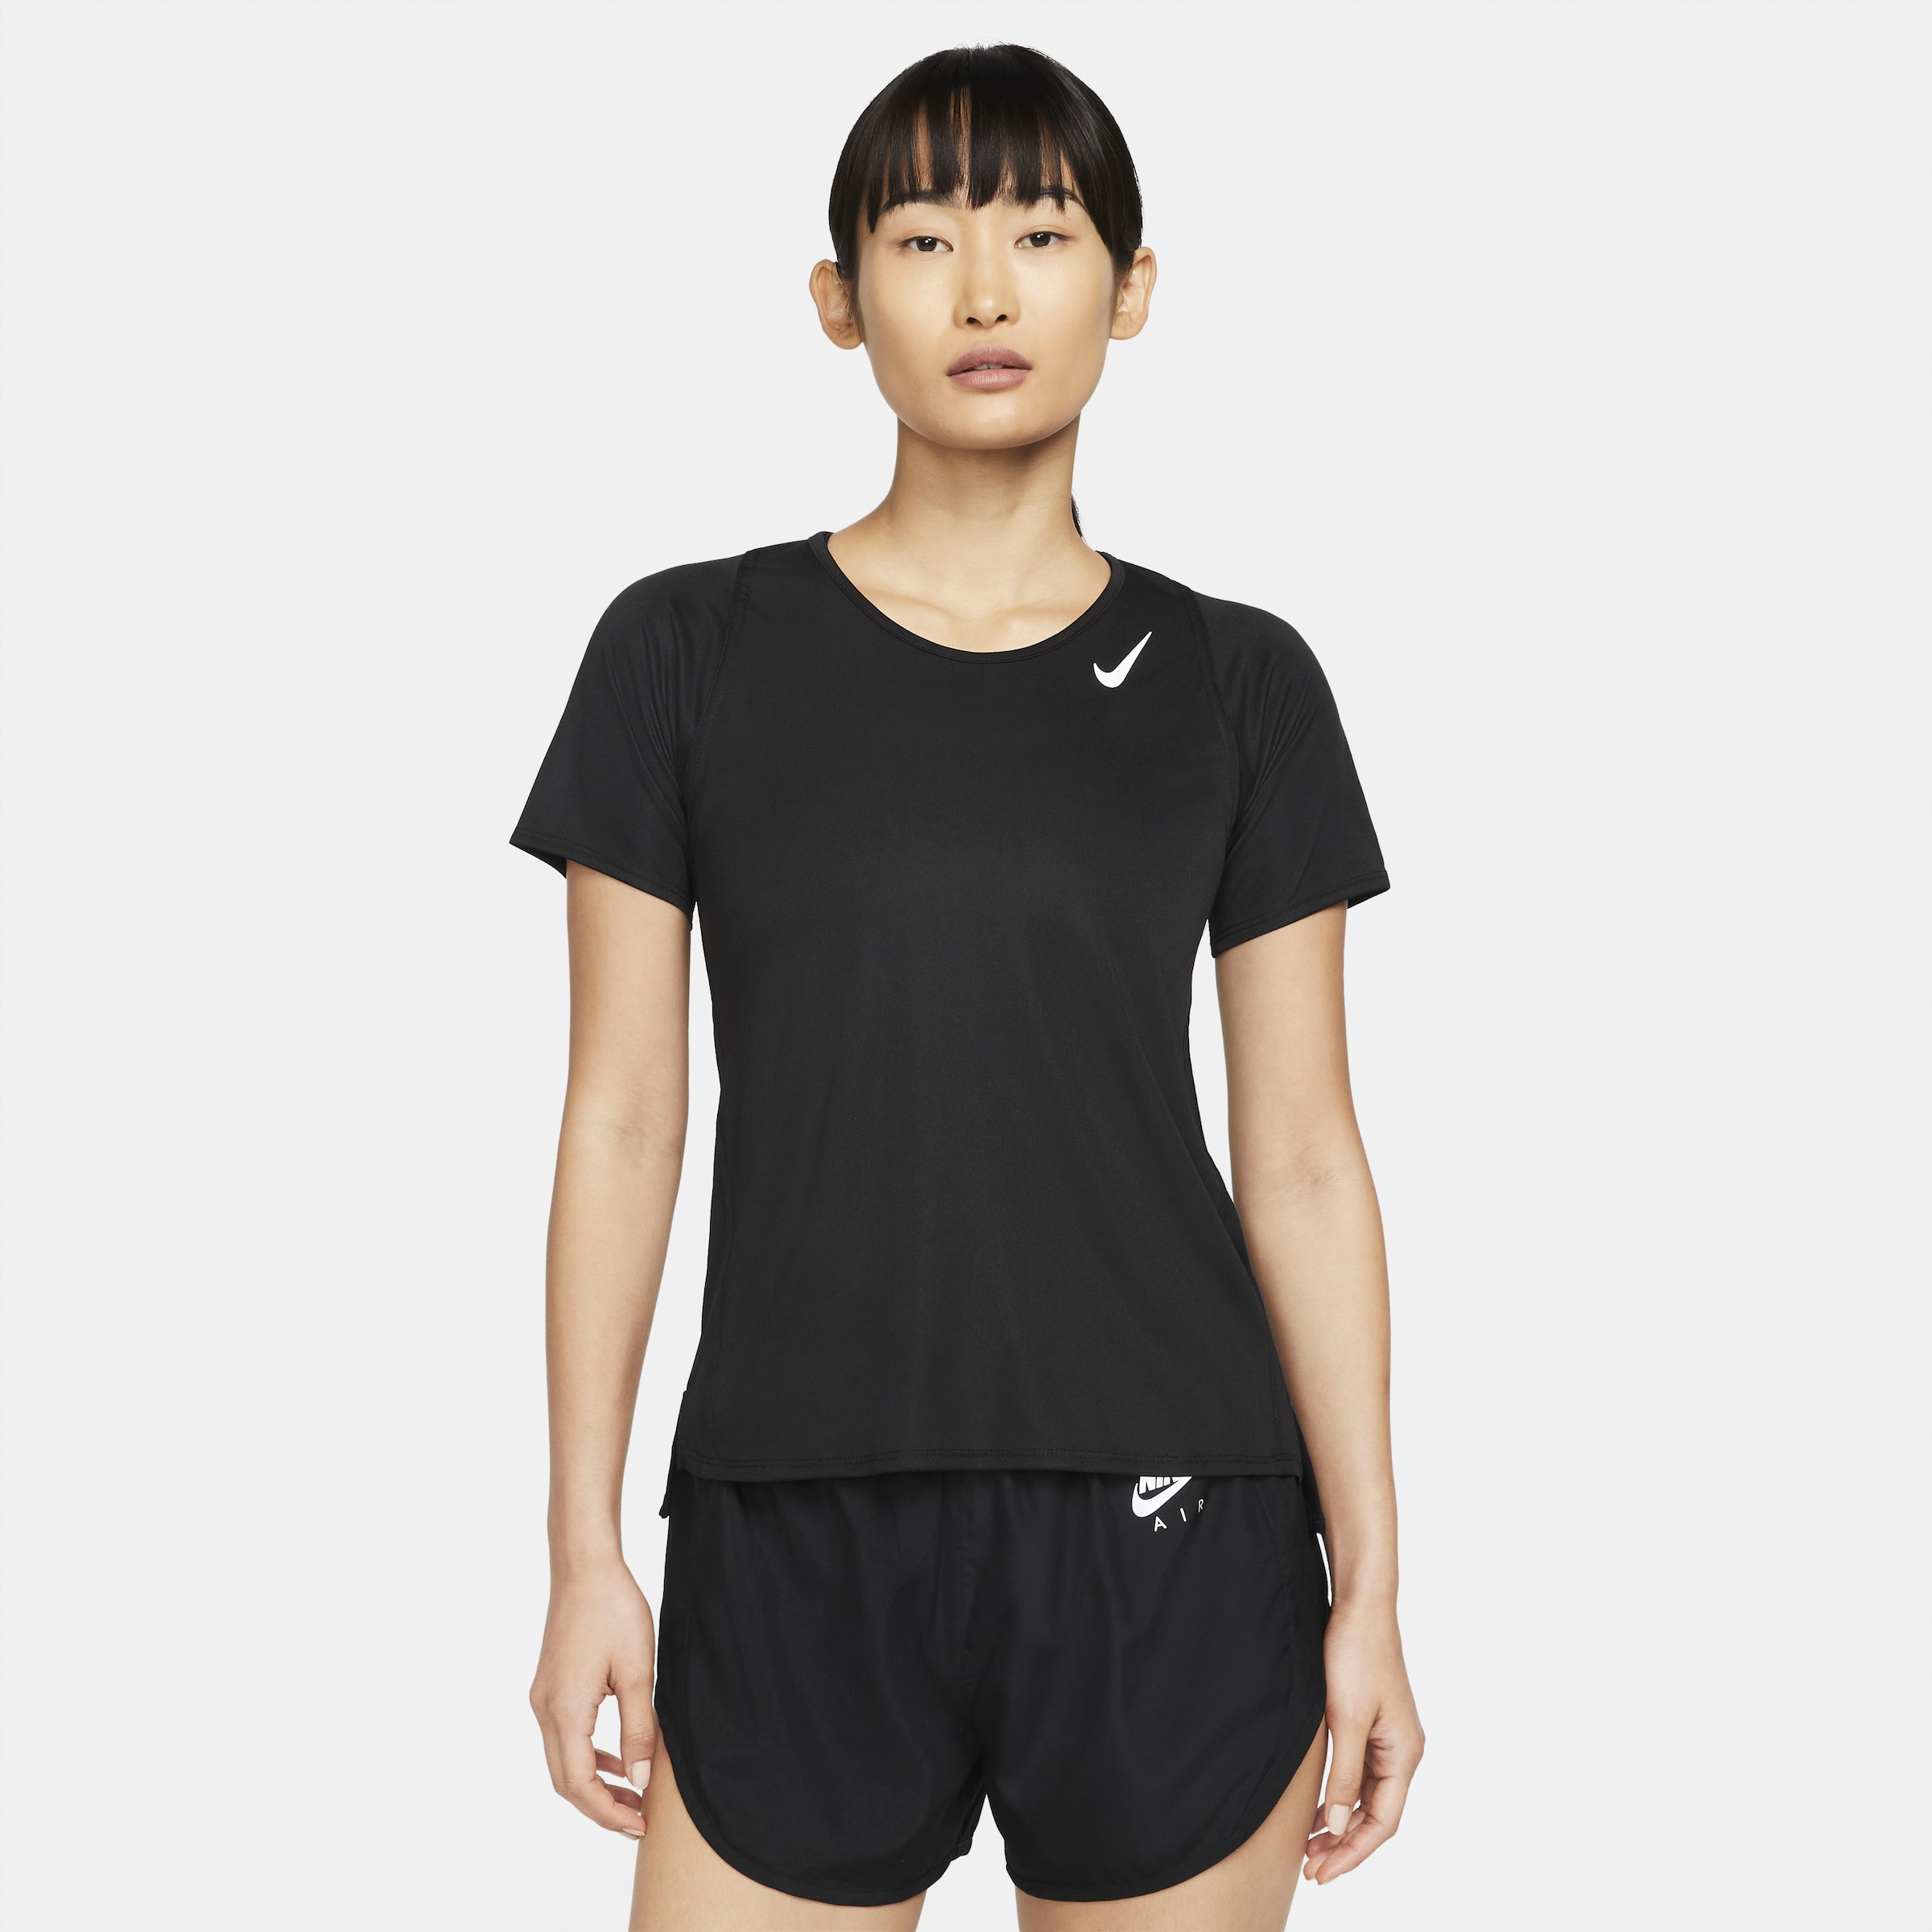 WOMEN\'S SHORT-SLEEVE Laufshirt OTTO »DRI-FIT TOP« RACE im Nike RUNNING Shop Online bestellen